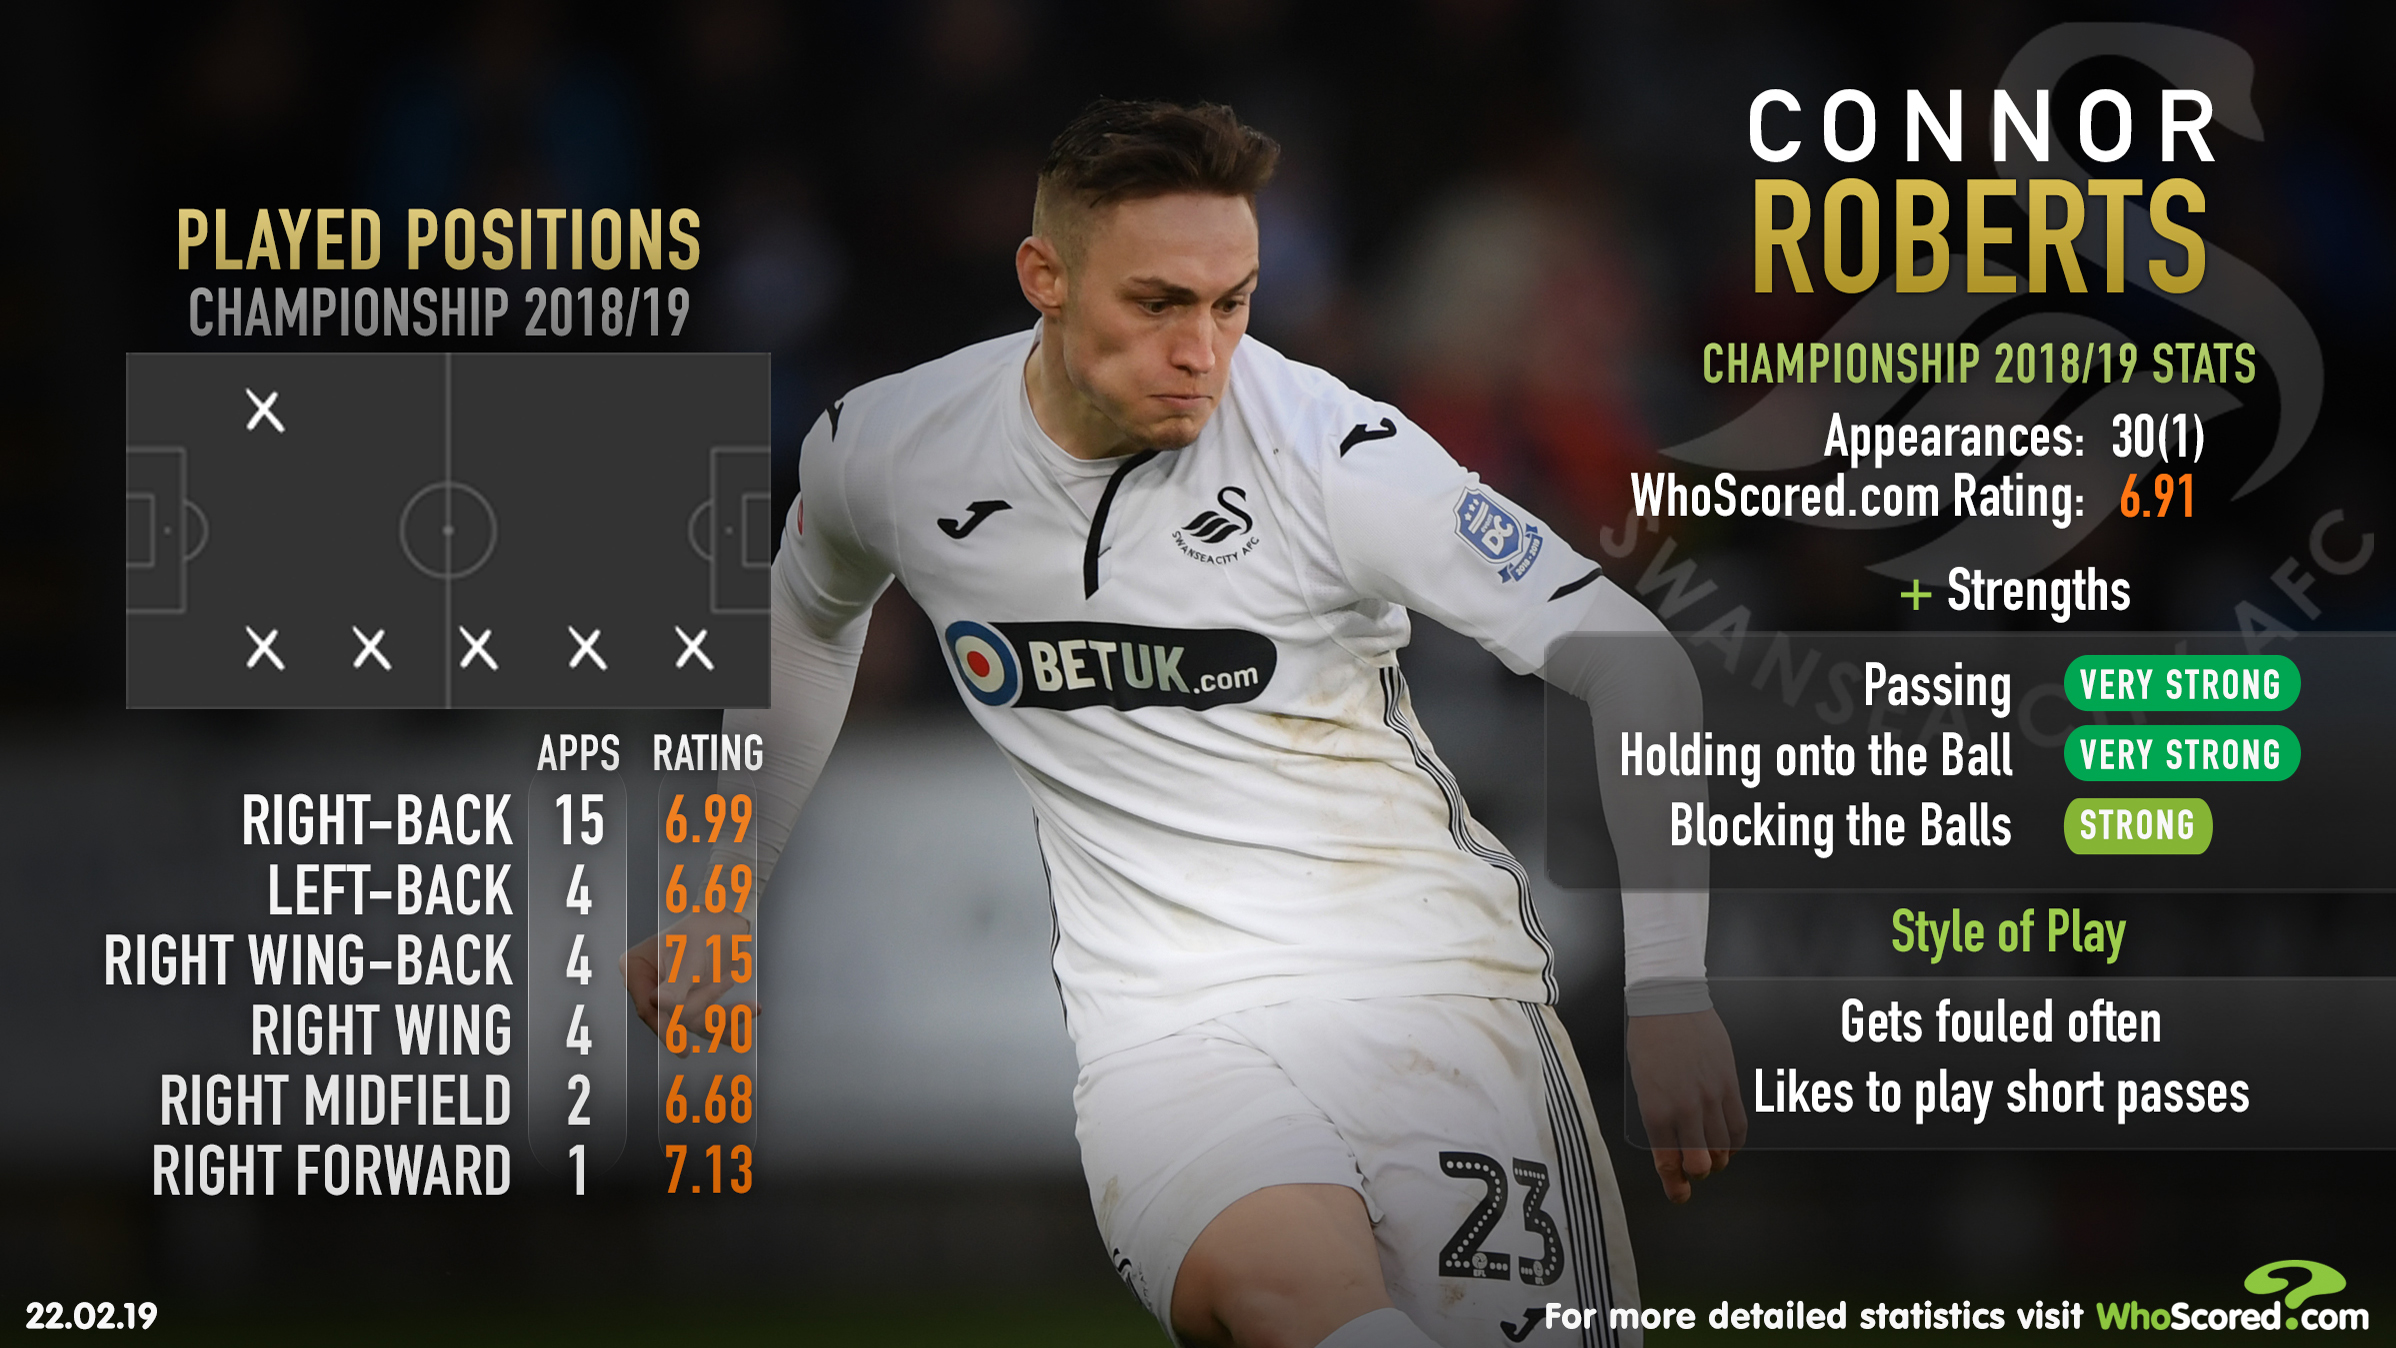 Connor Roberts Swansea - C. Roberts | Swansea - Connor roberts plays ...